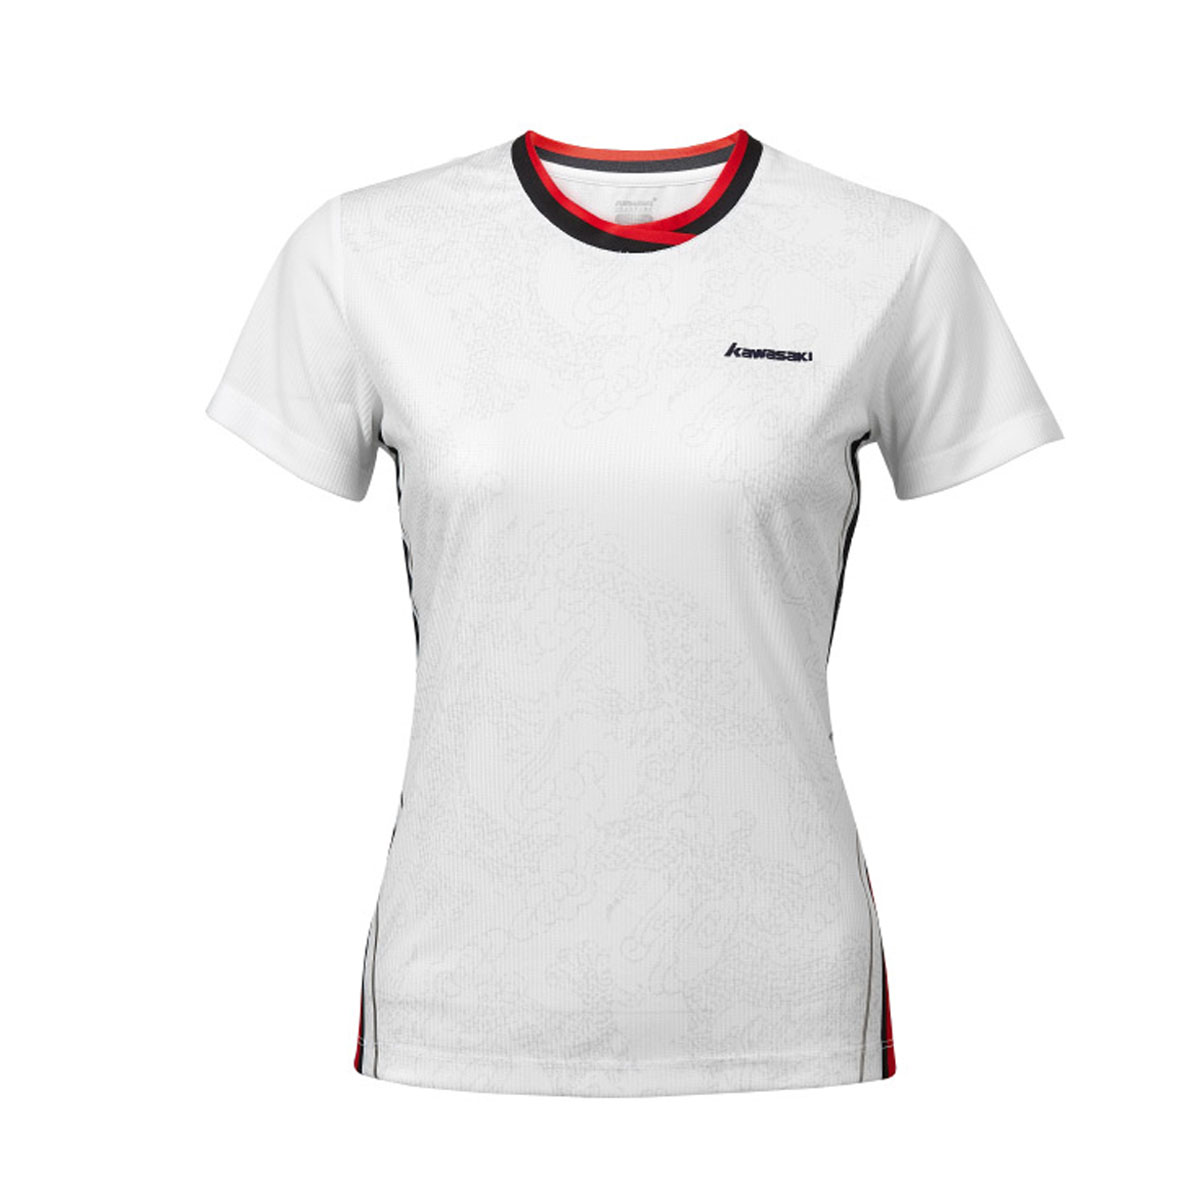 Женская футболка KAWASAKI A2949-1 WHITE (размеры: S, M, L, XL, 2XL). 